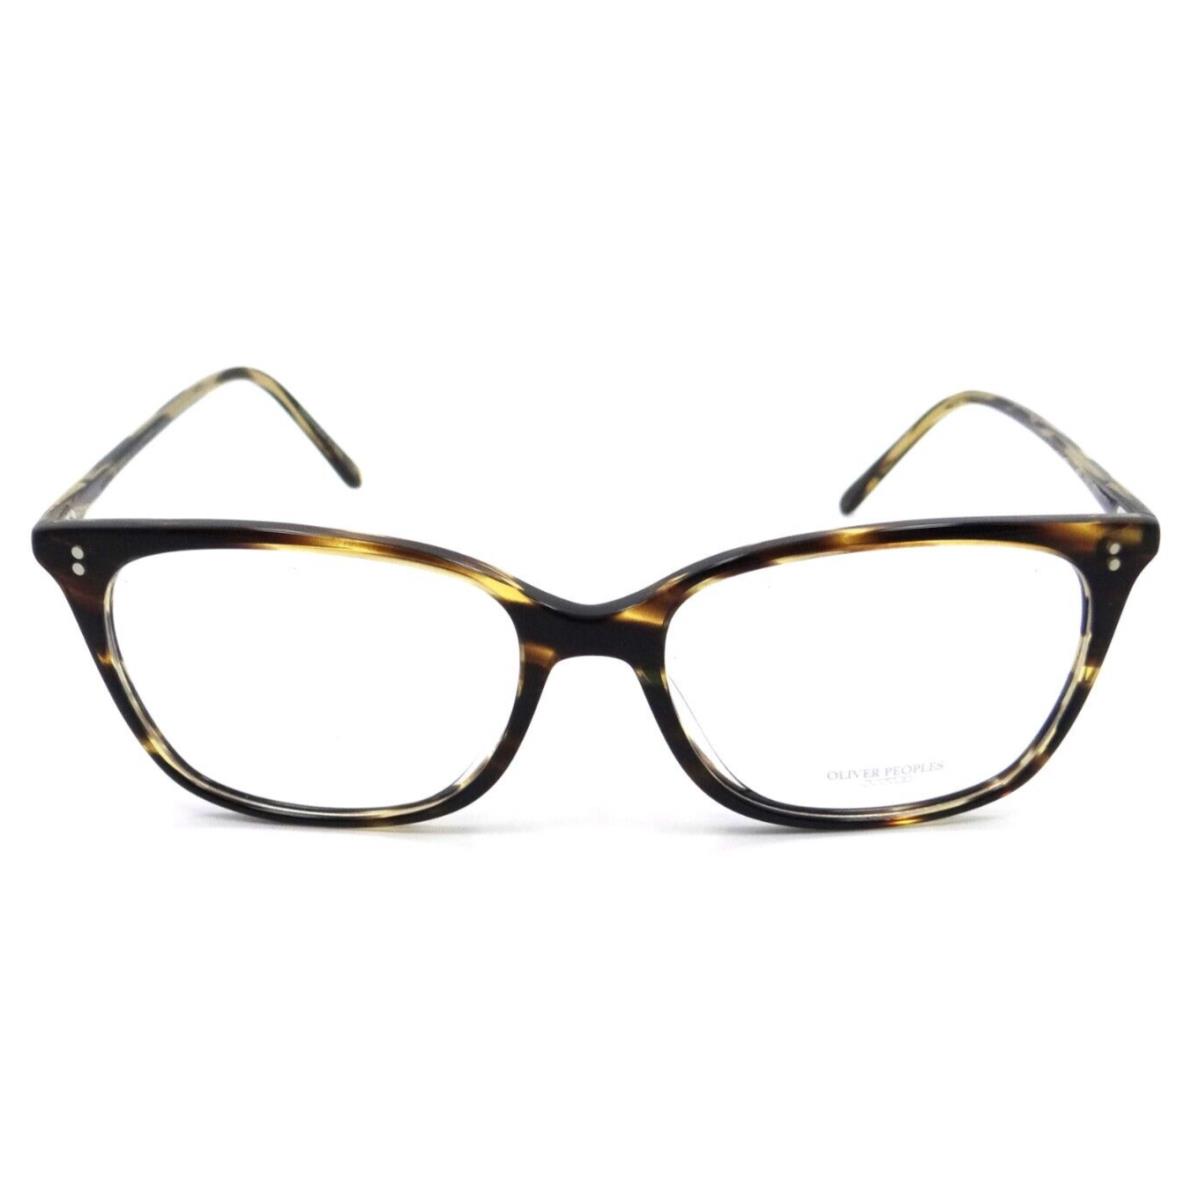 Oliver Peoples eyeglasses  - Multicolor Frame 0